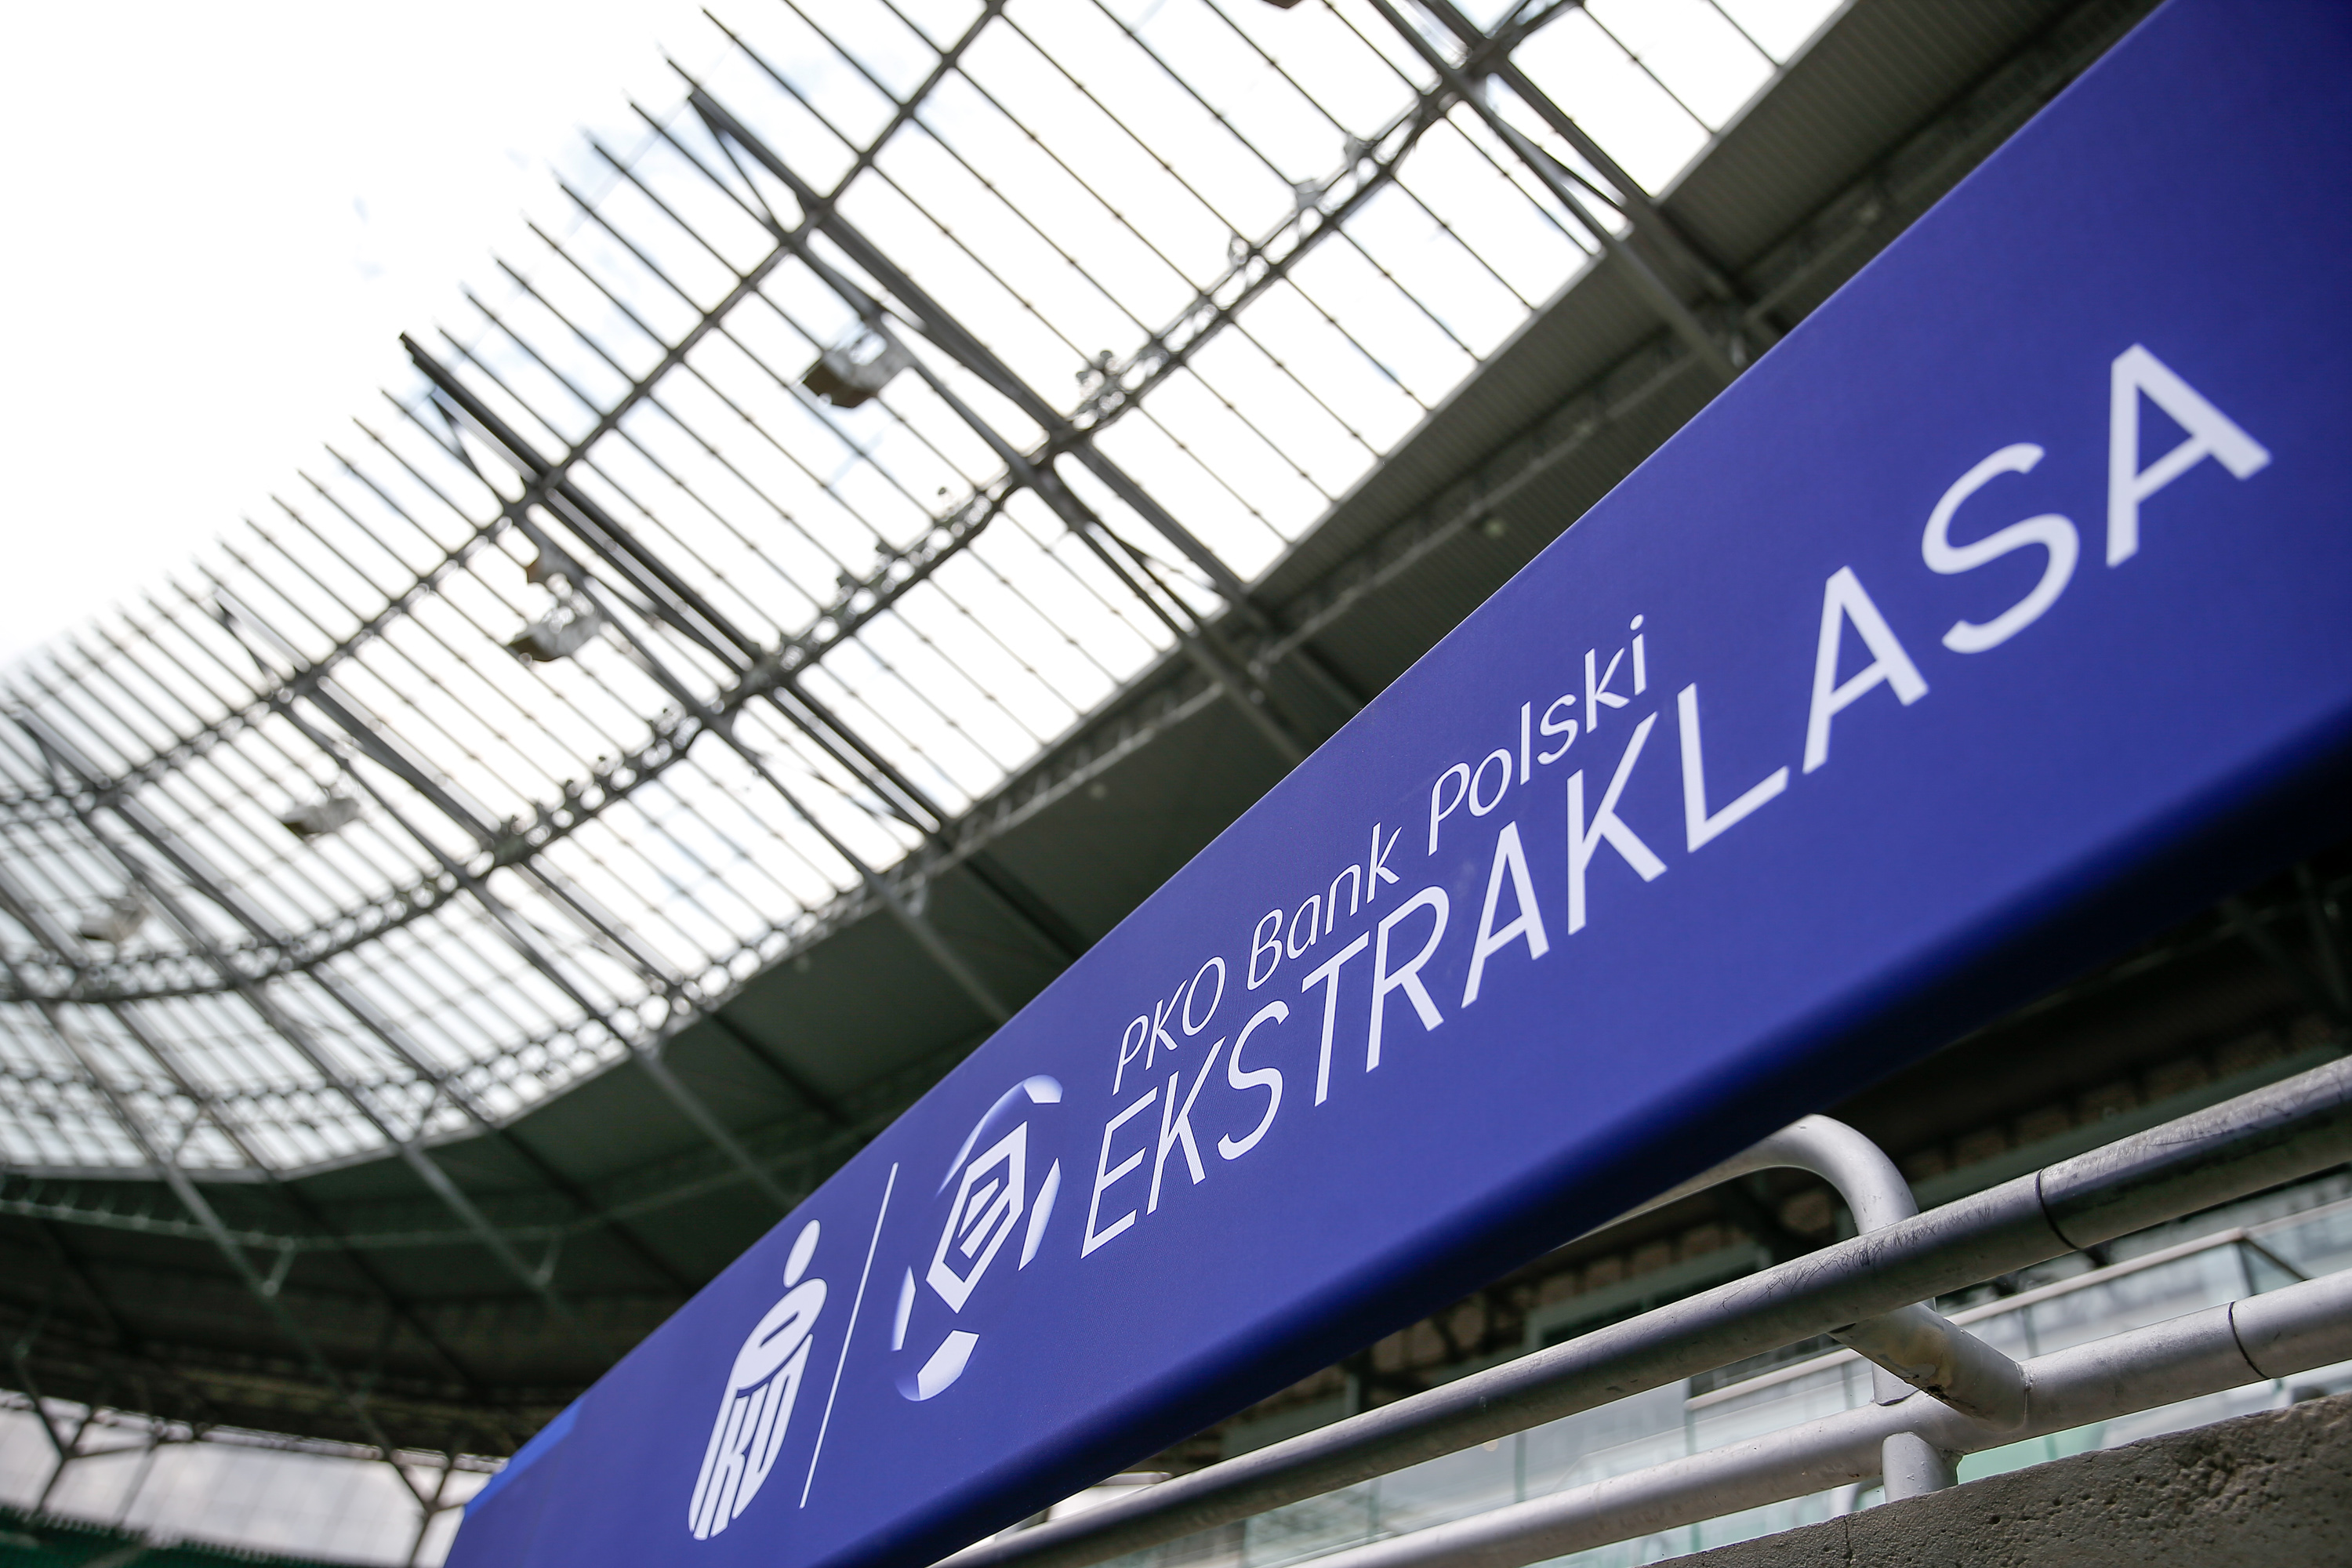 Ekstraklasa gra dalej z PKO Bankiem Polskim i marką LOTTO